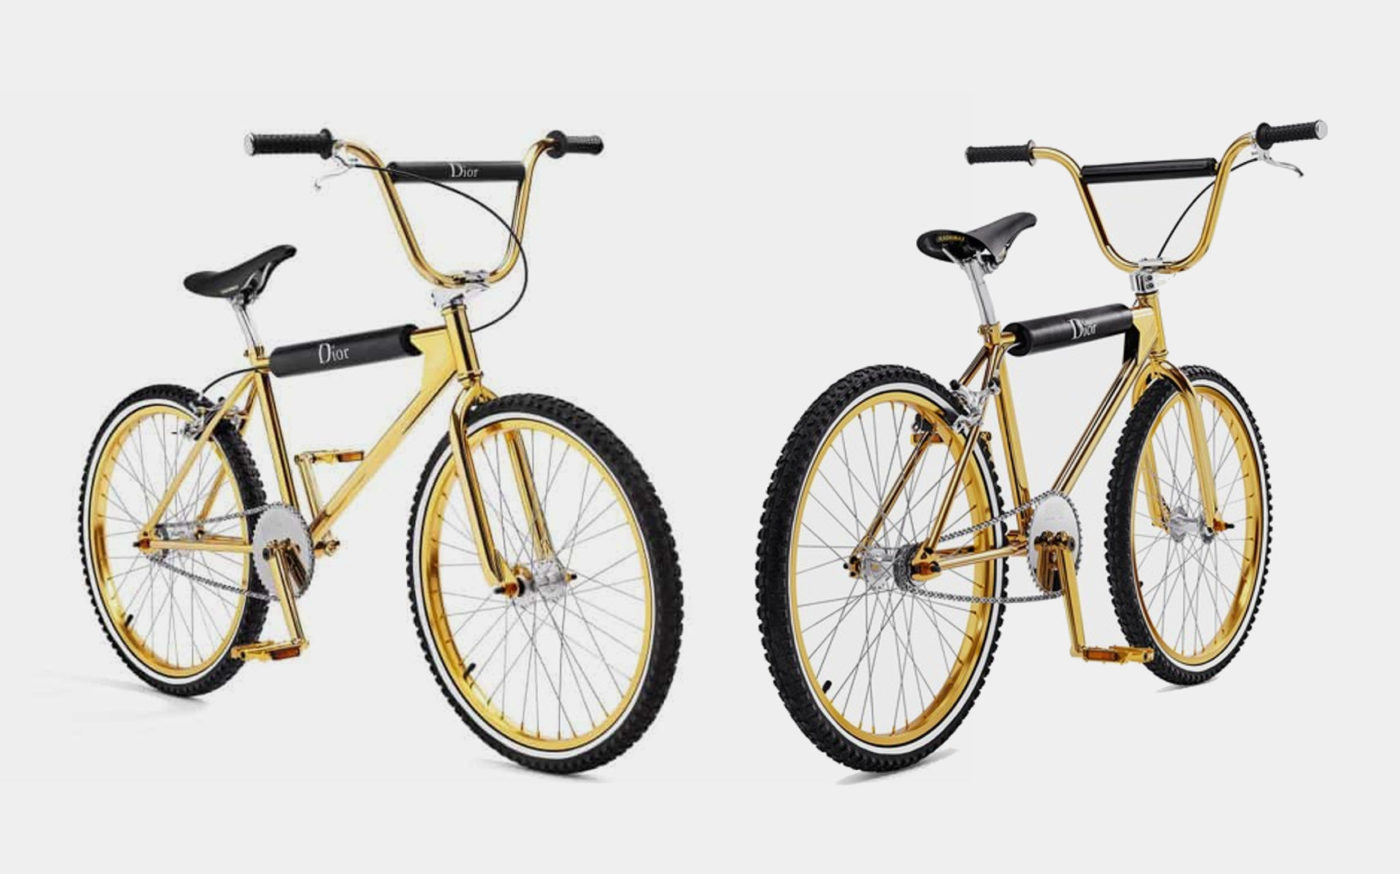 Bogarde X Dior Homme Gold BMX Bike